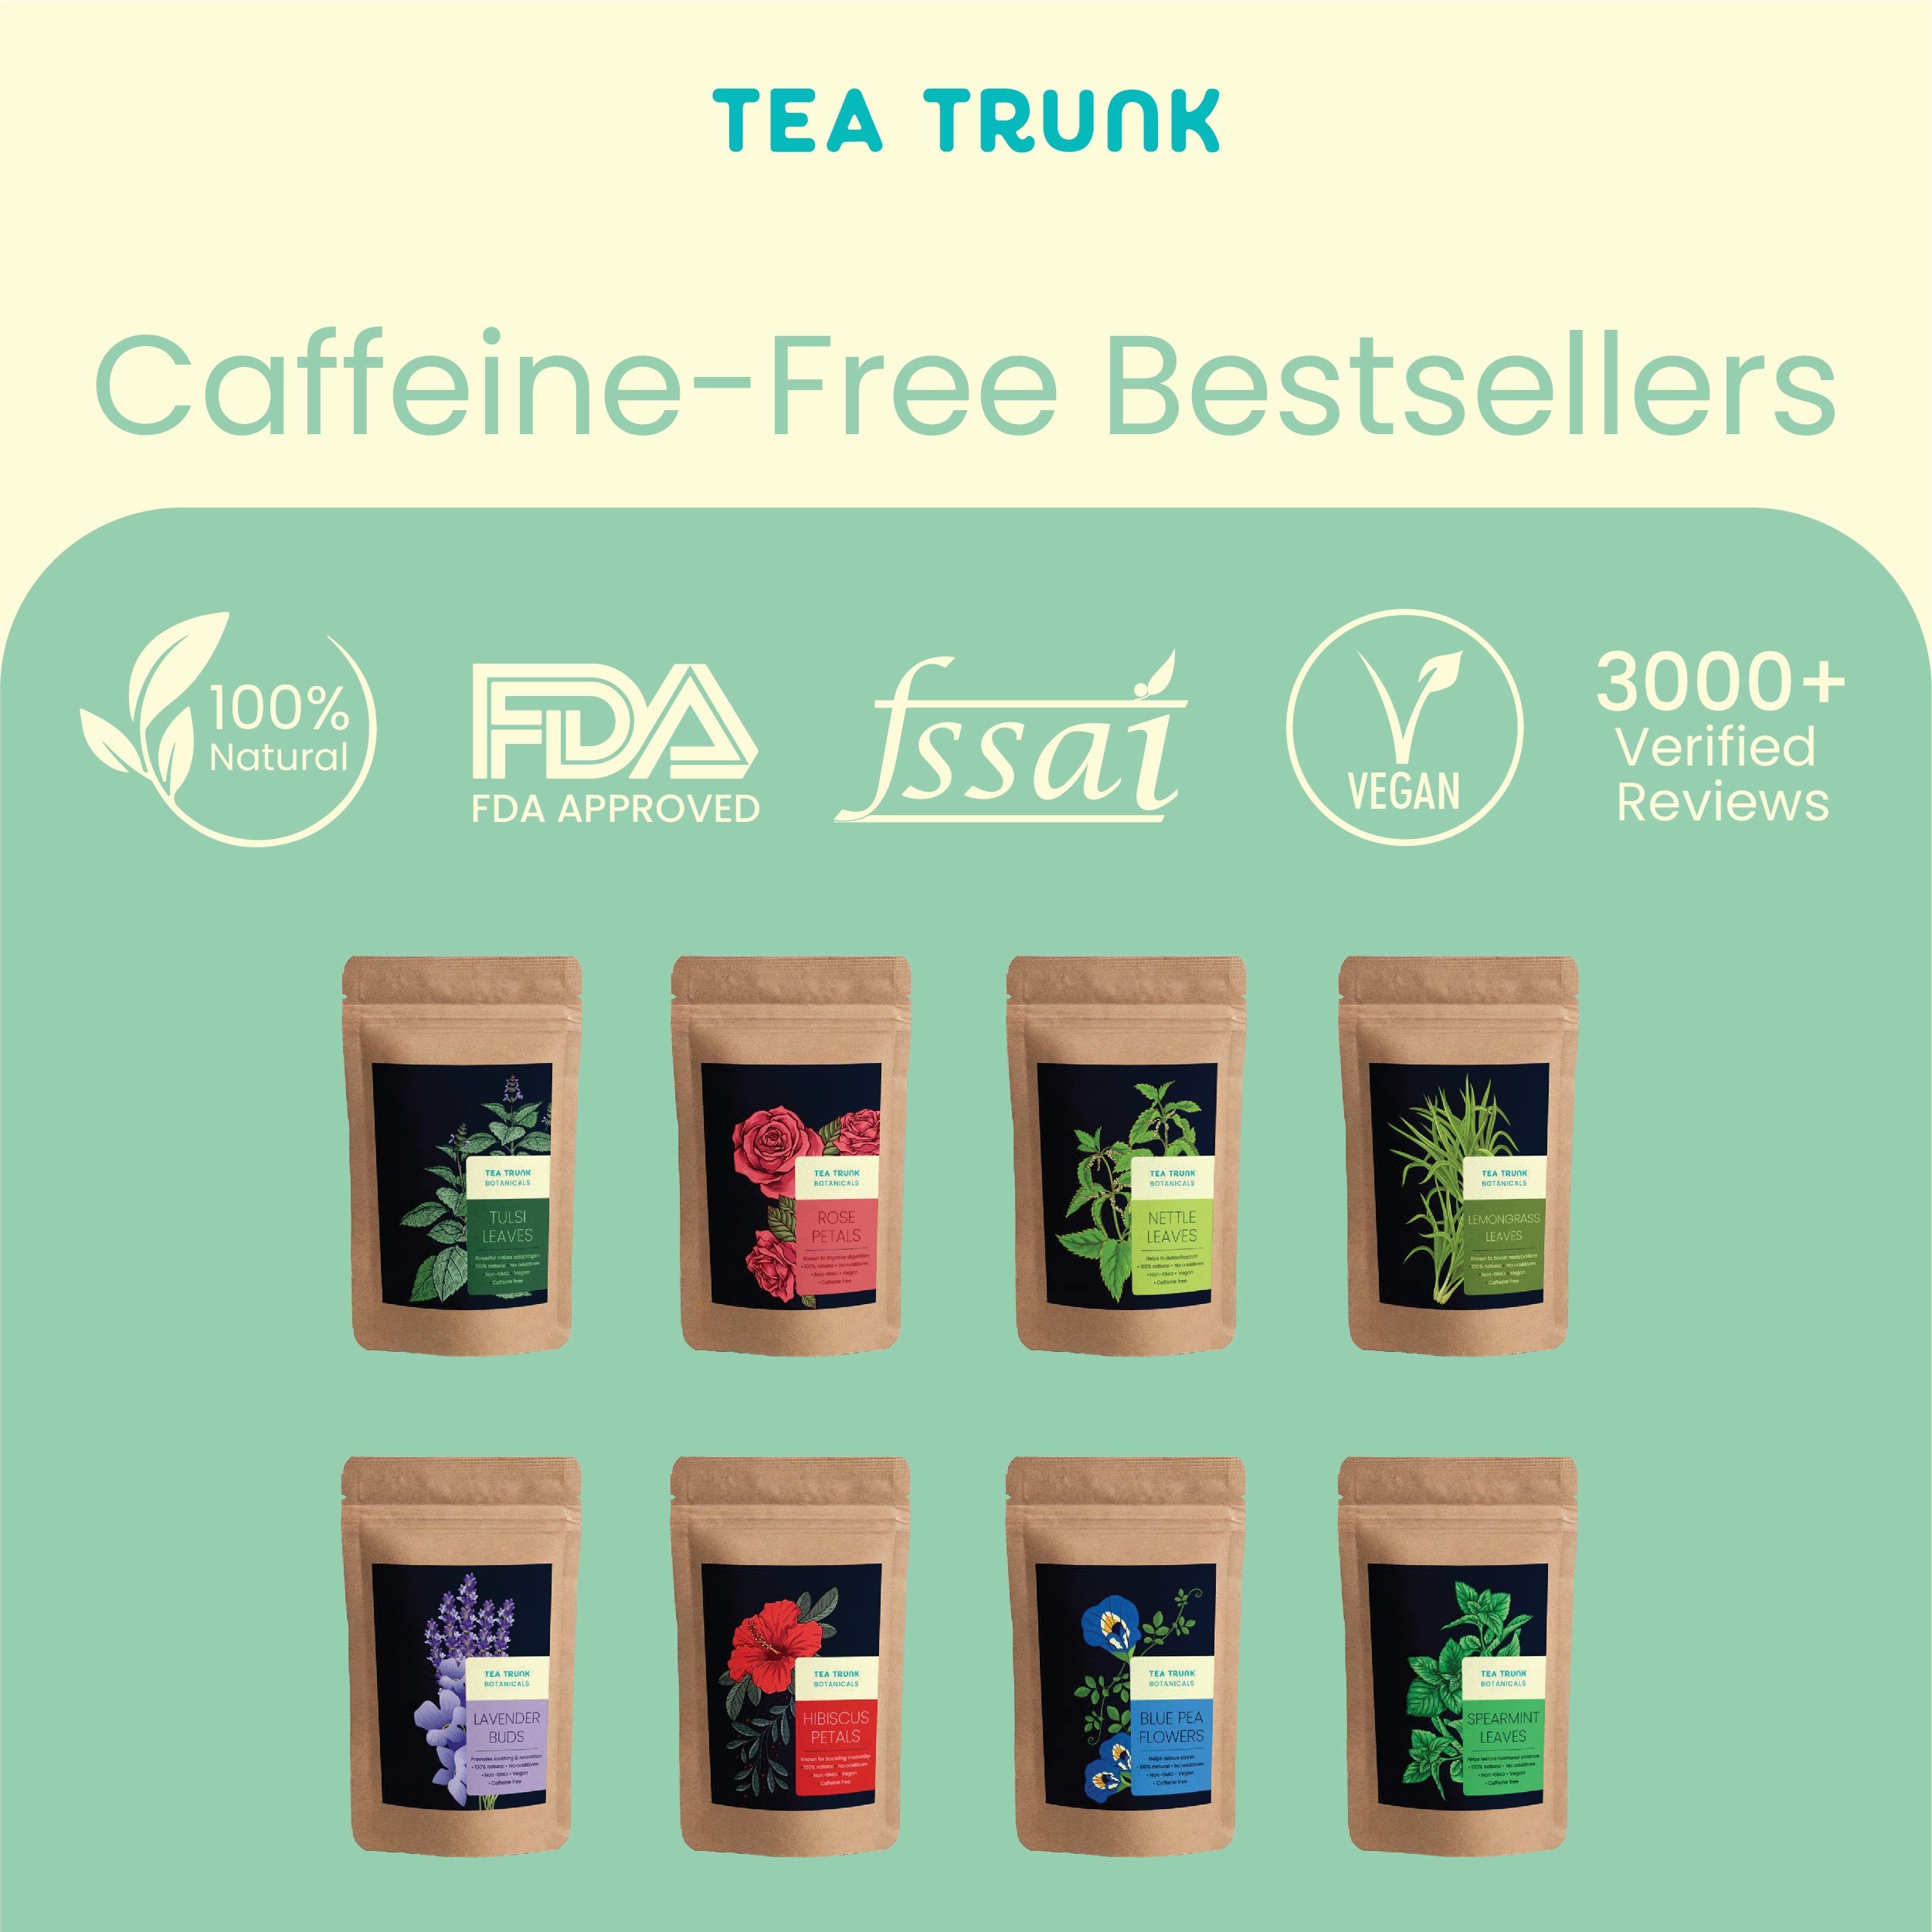 Caffeine-free bestsellers